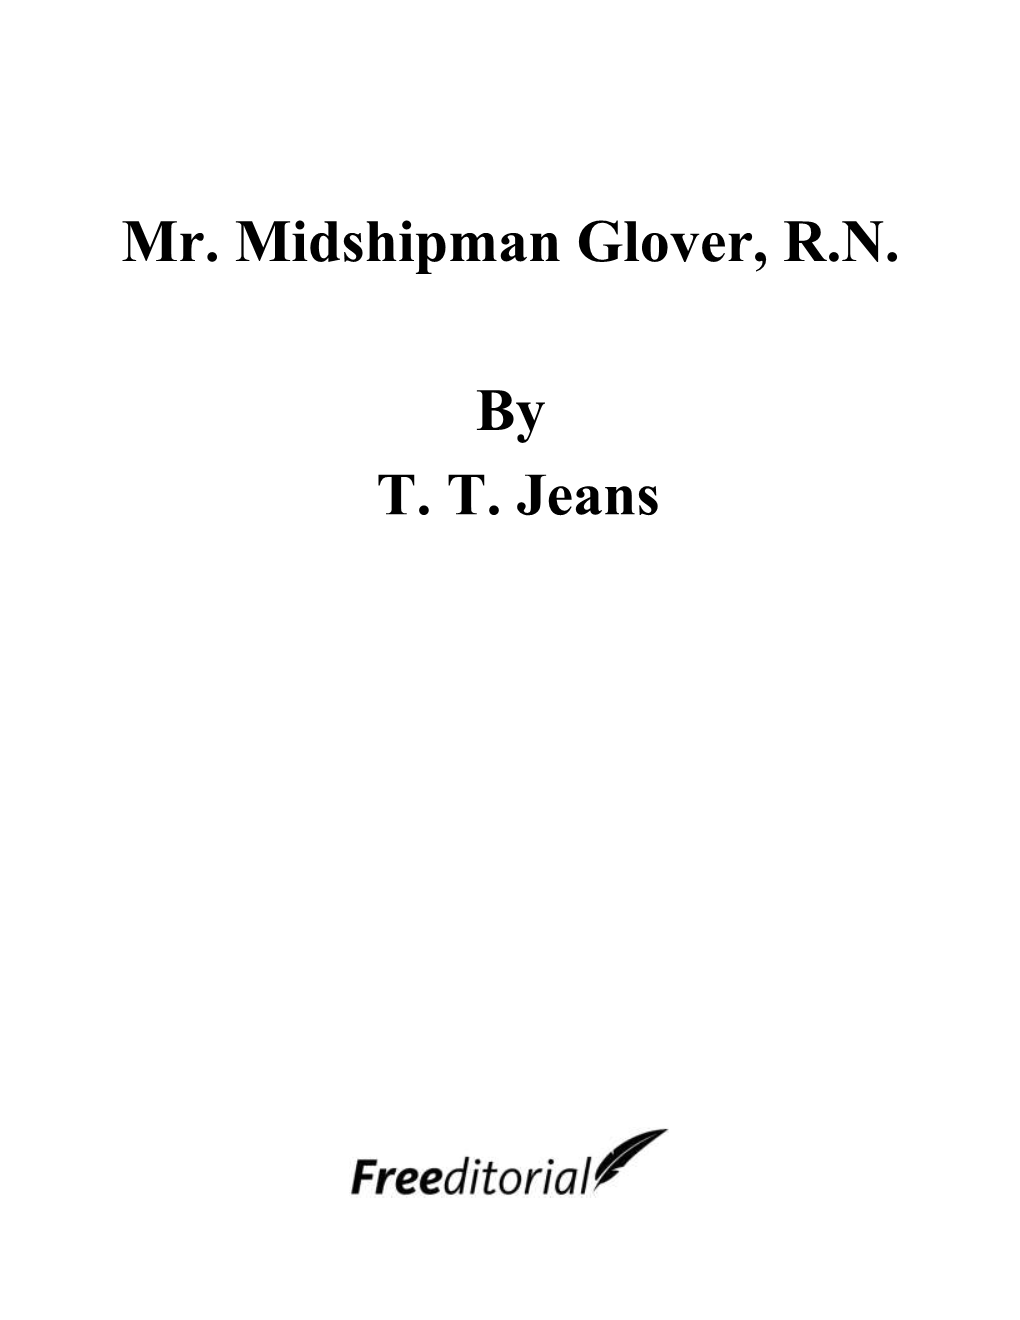 Mr. Midshipman Glover, RN by TT Jeans